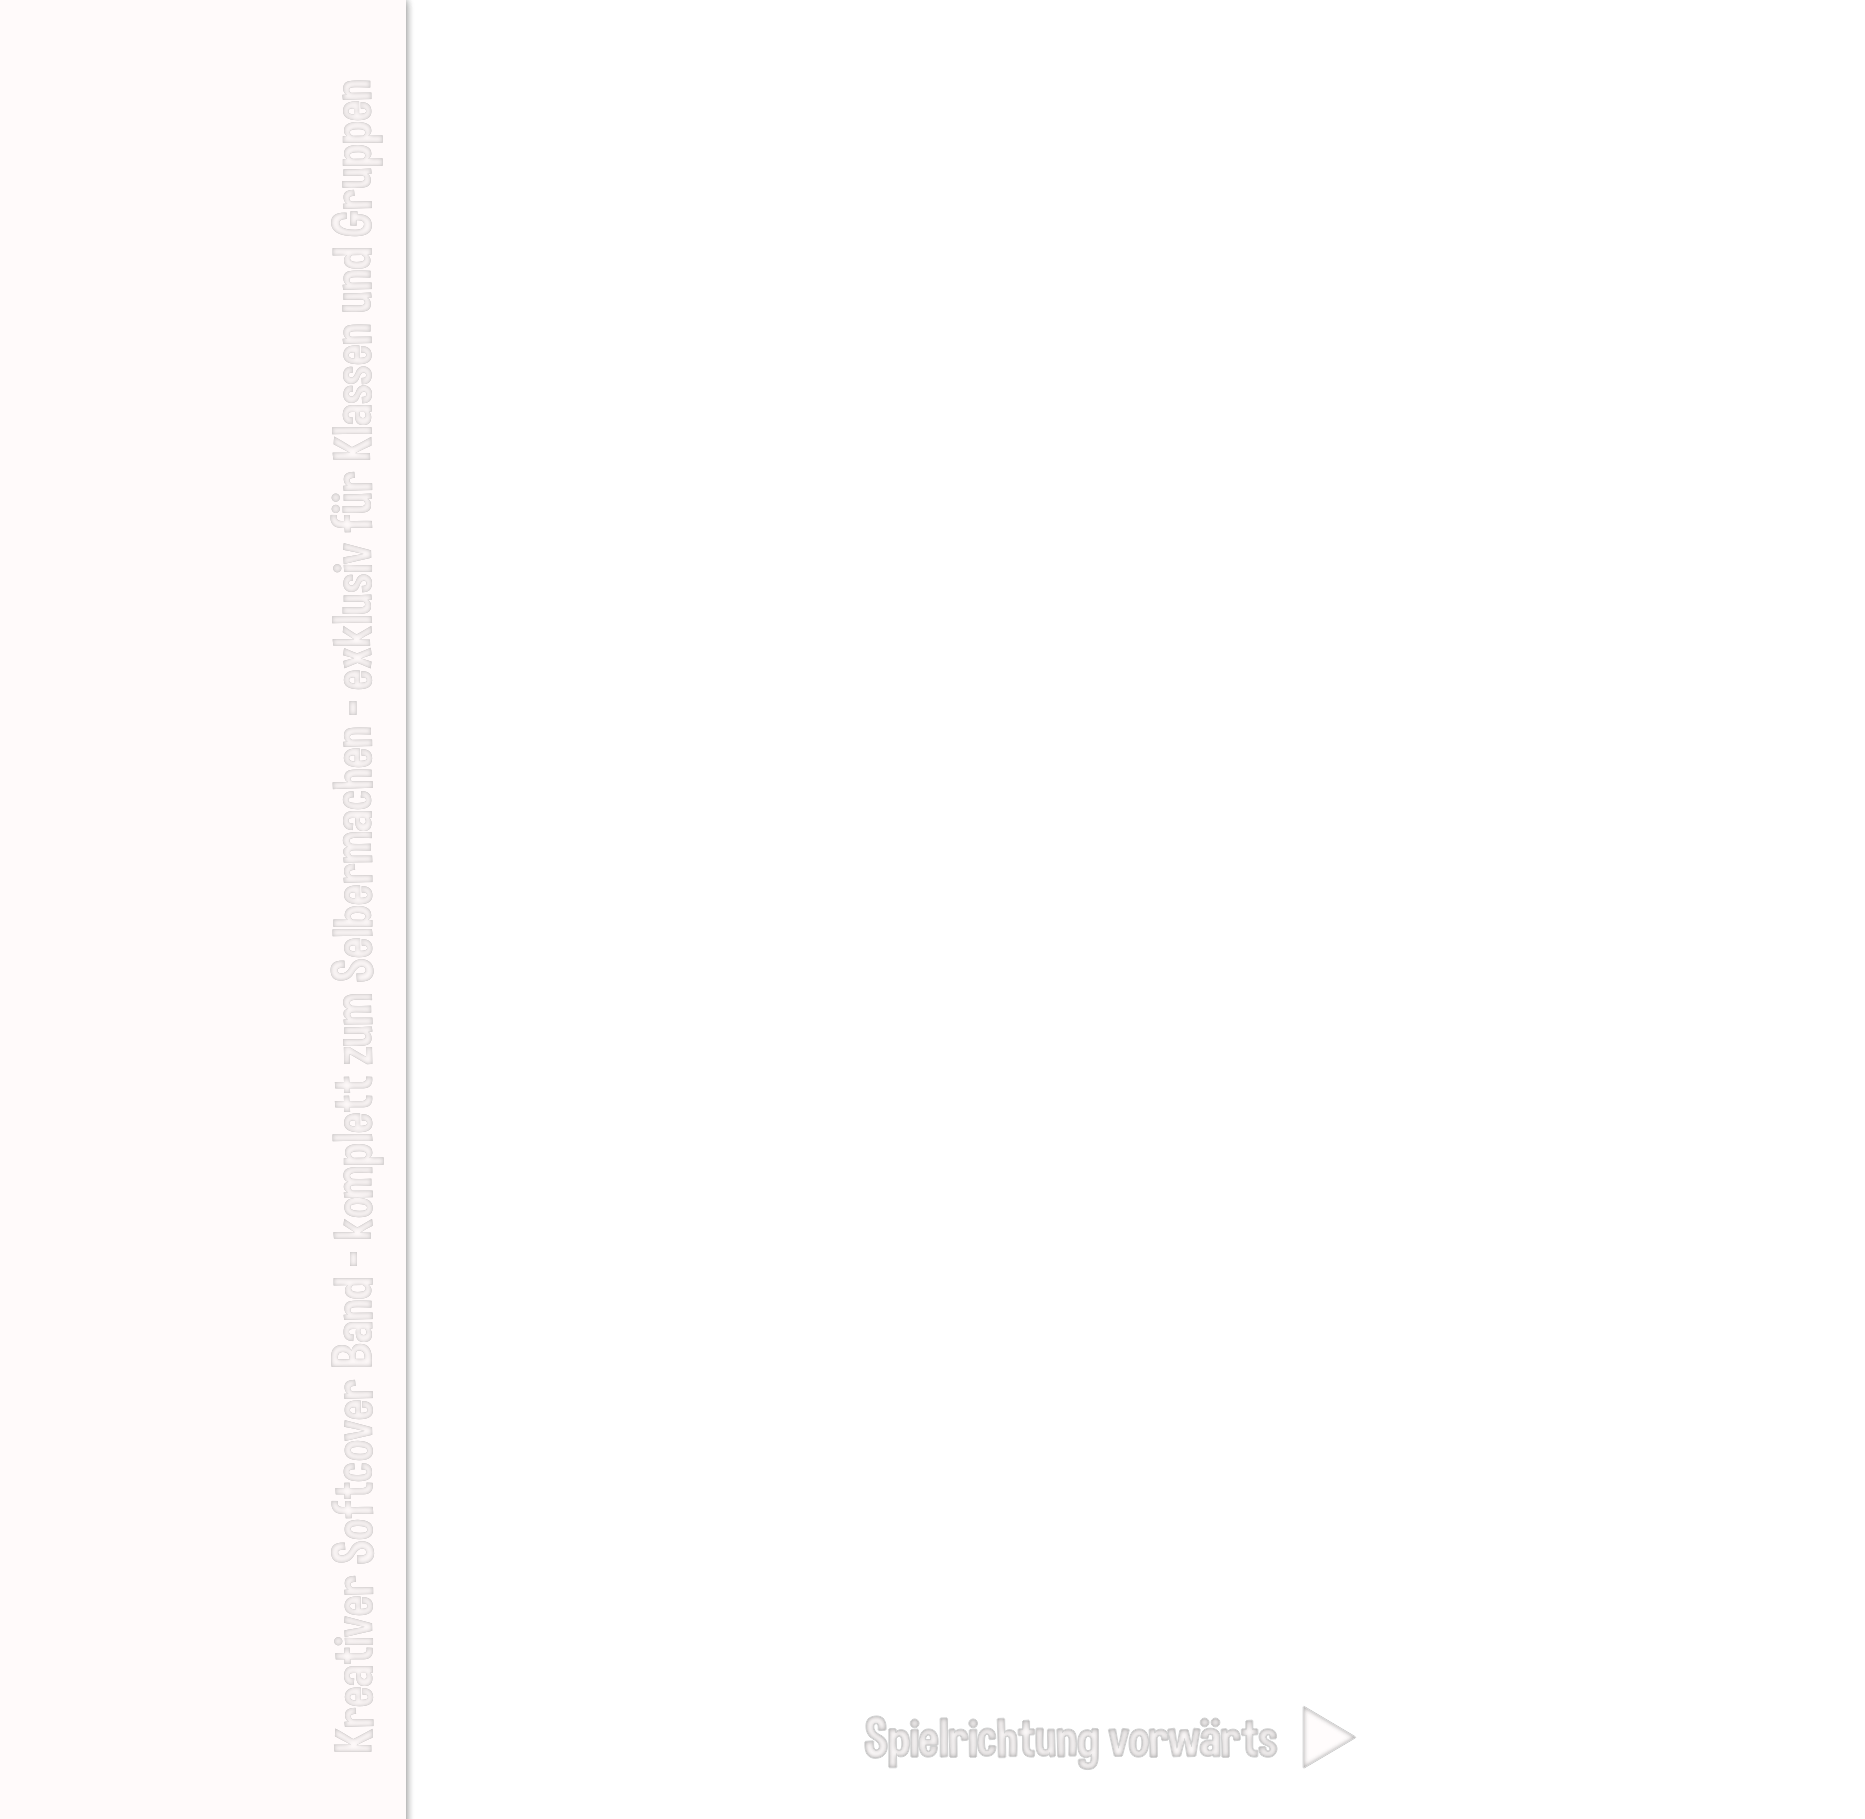 Kreative Bücher Mein Daumenkino Projekt Cover A-Seite Kreativer Softcover Band komplett zum Selbermachen